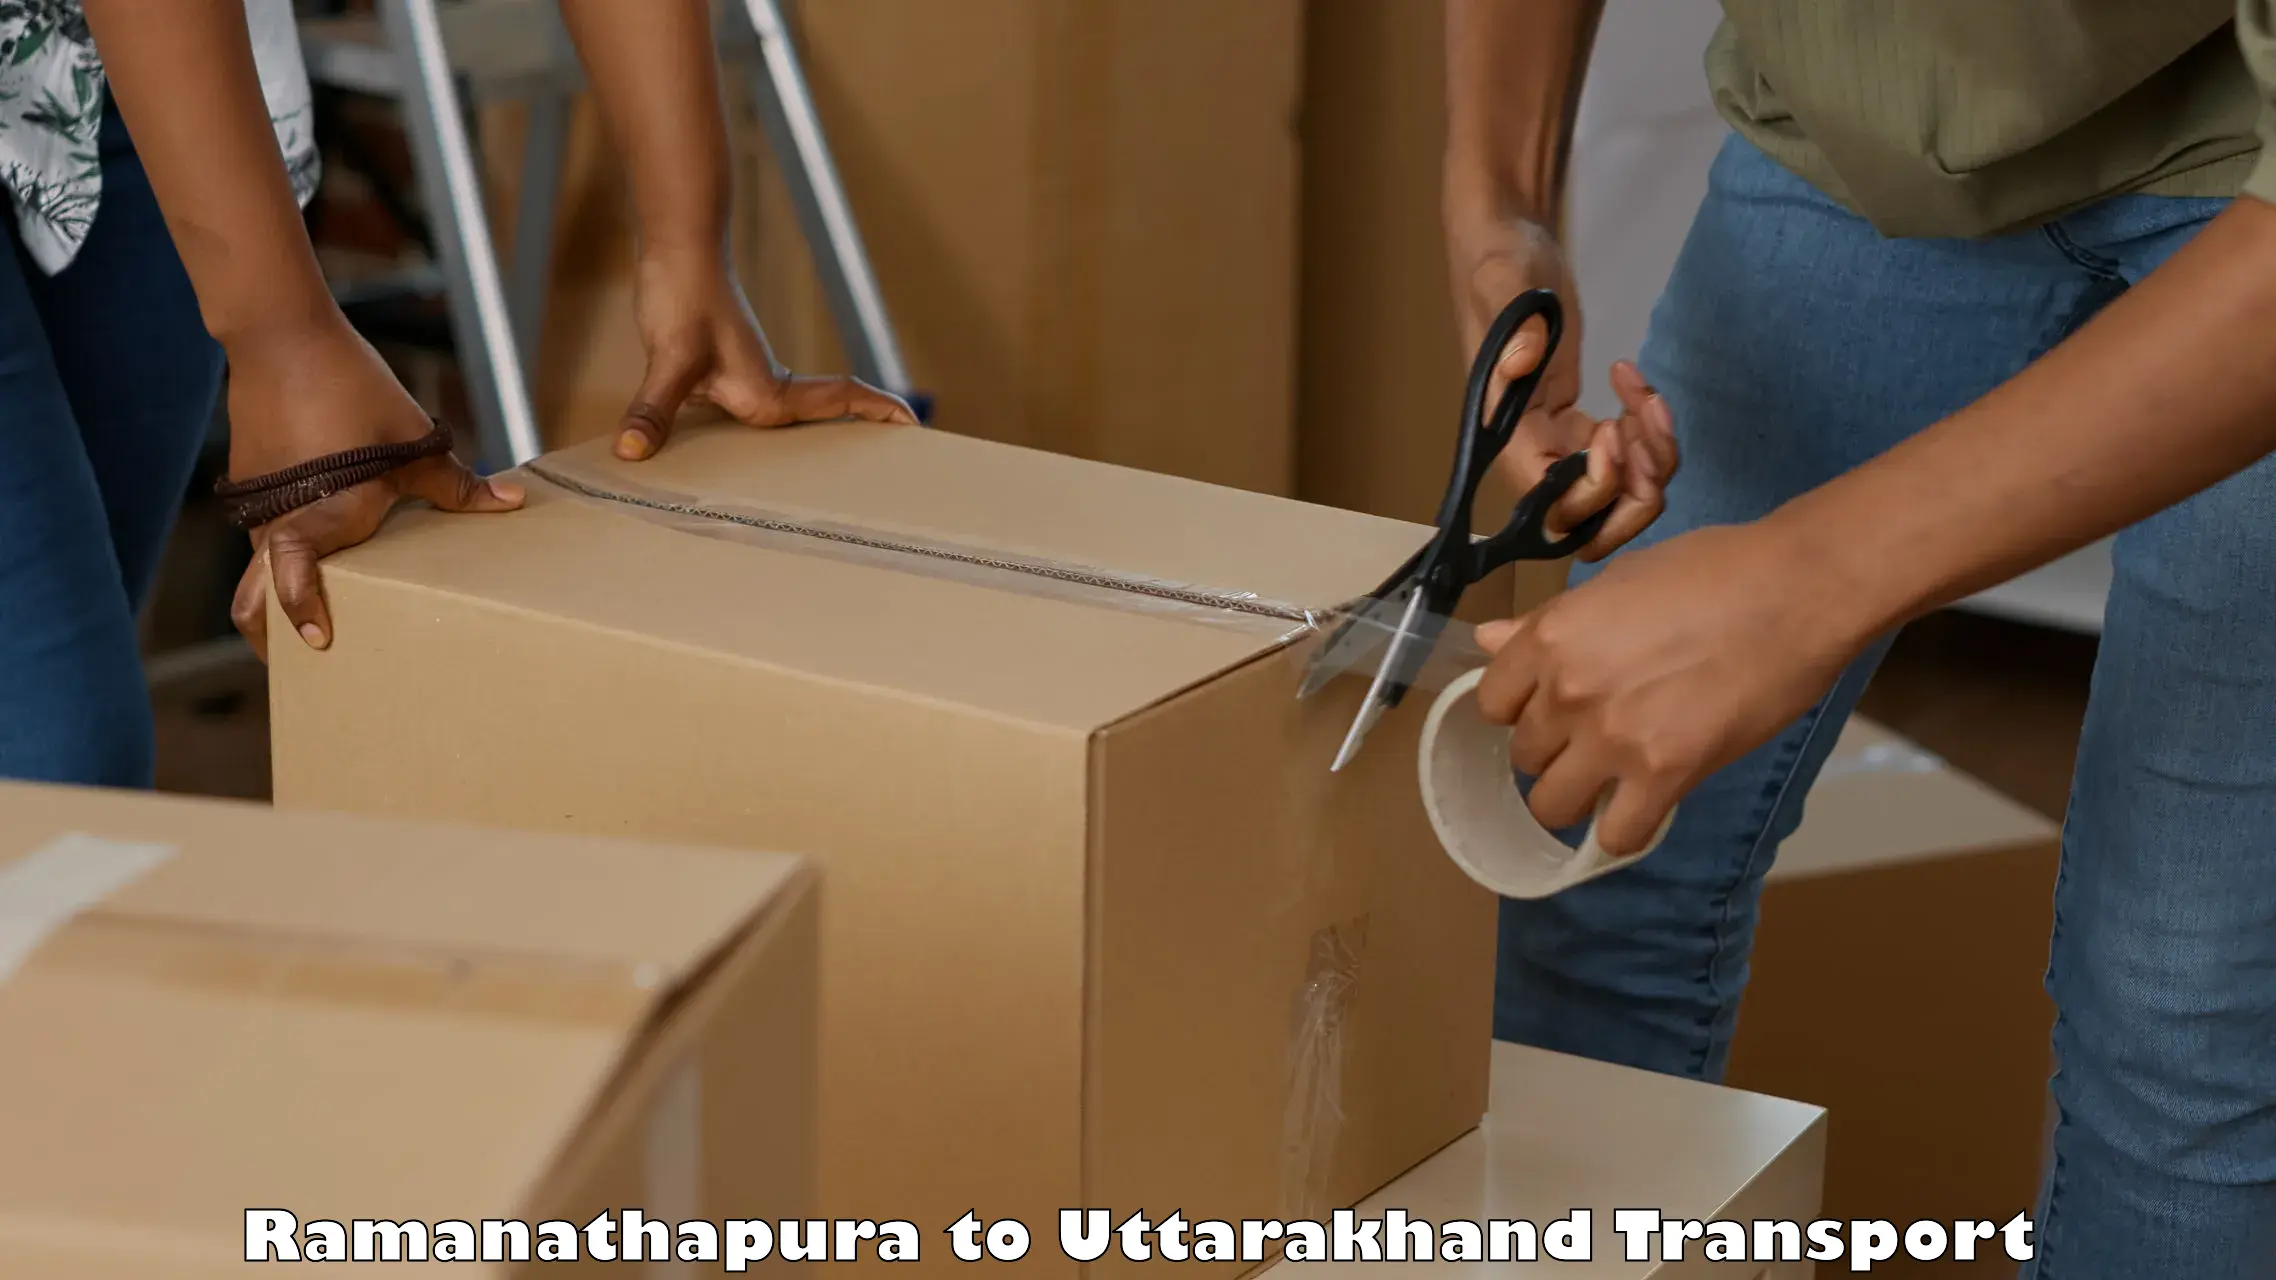 Shipping services in Ramanathapura to Nainital